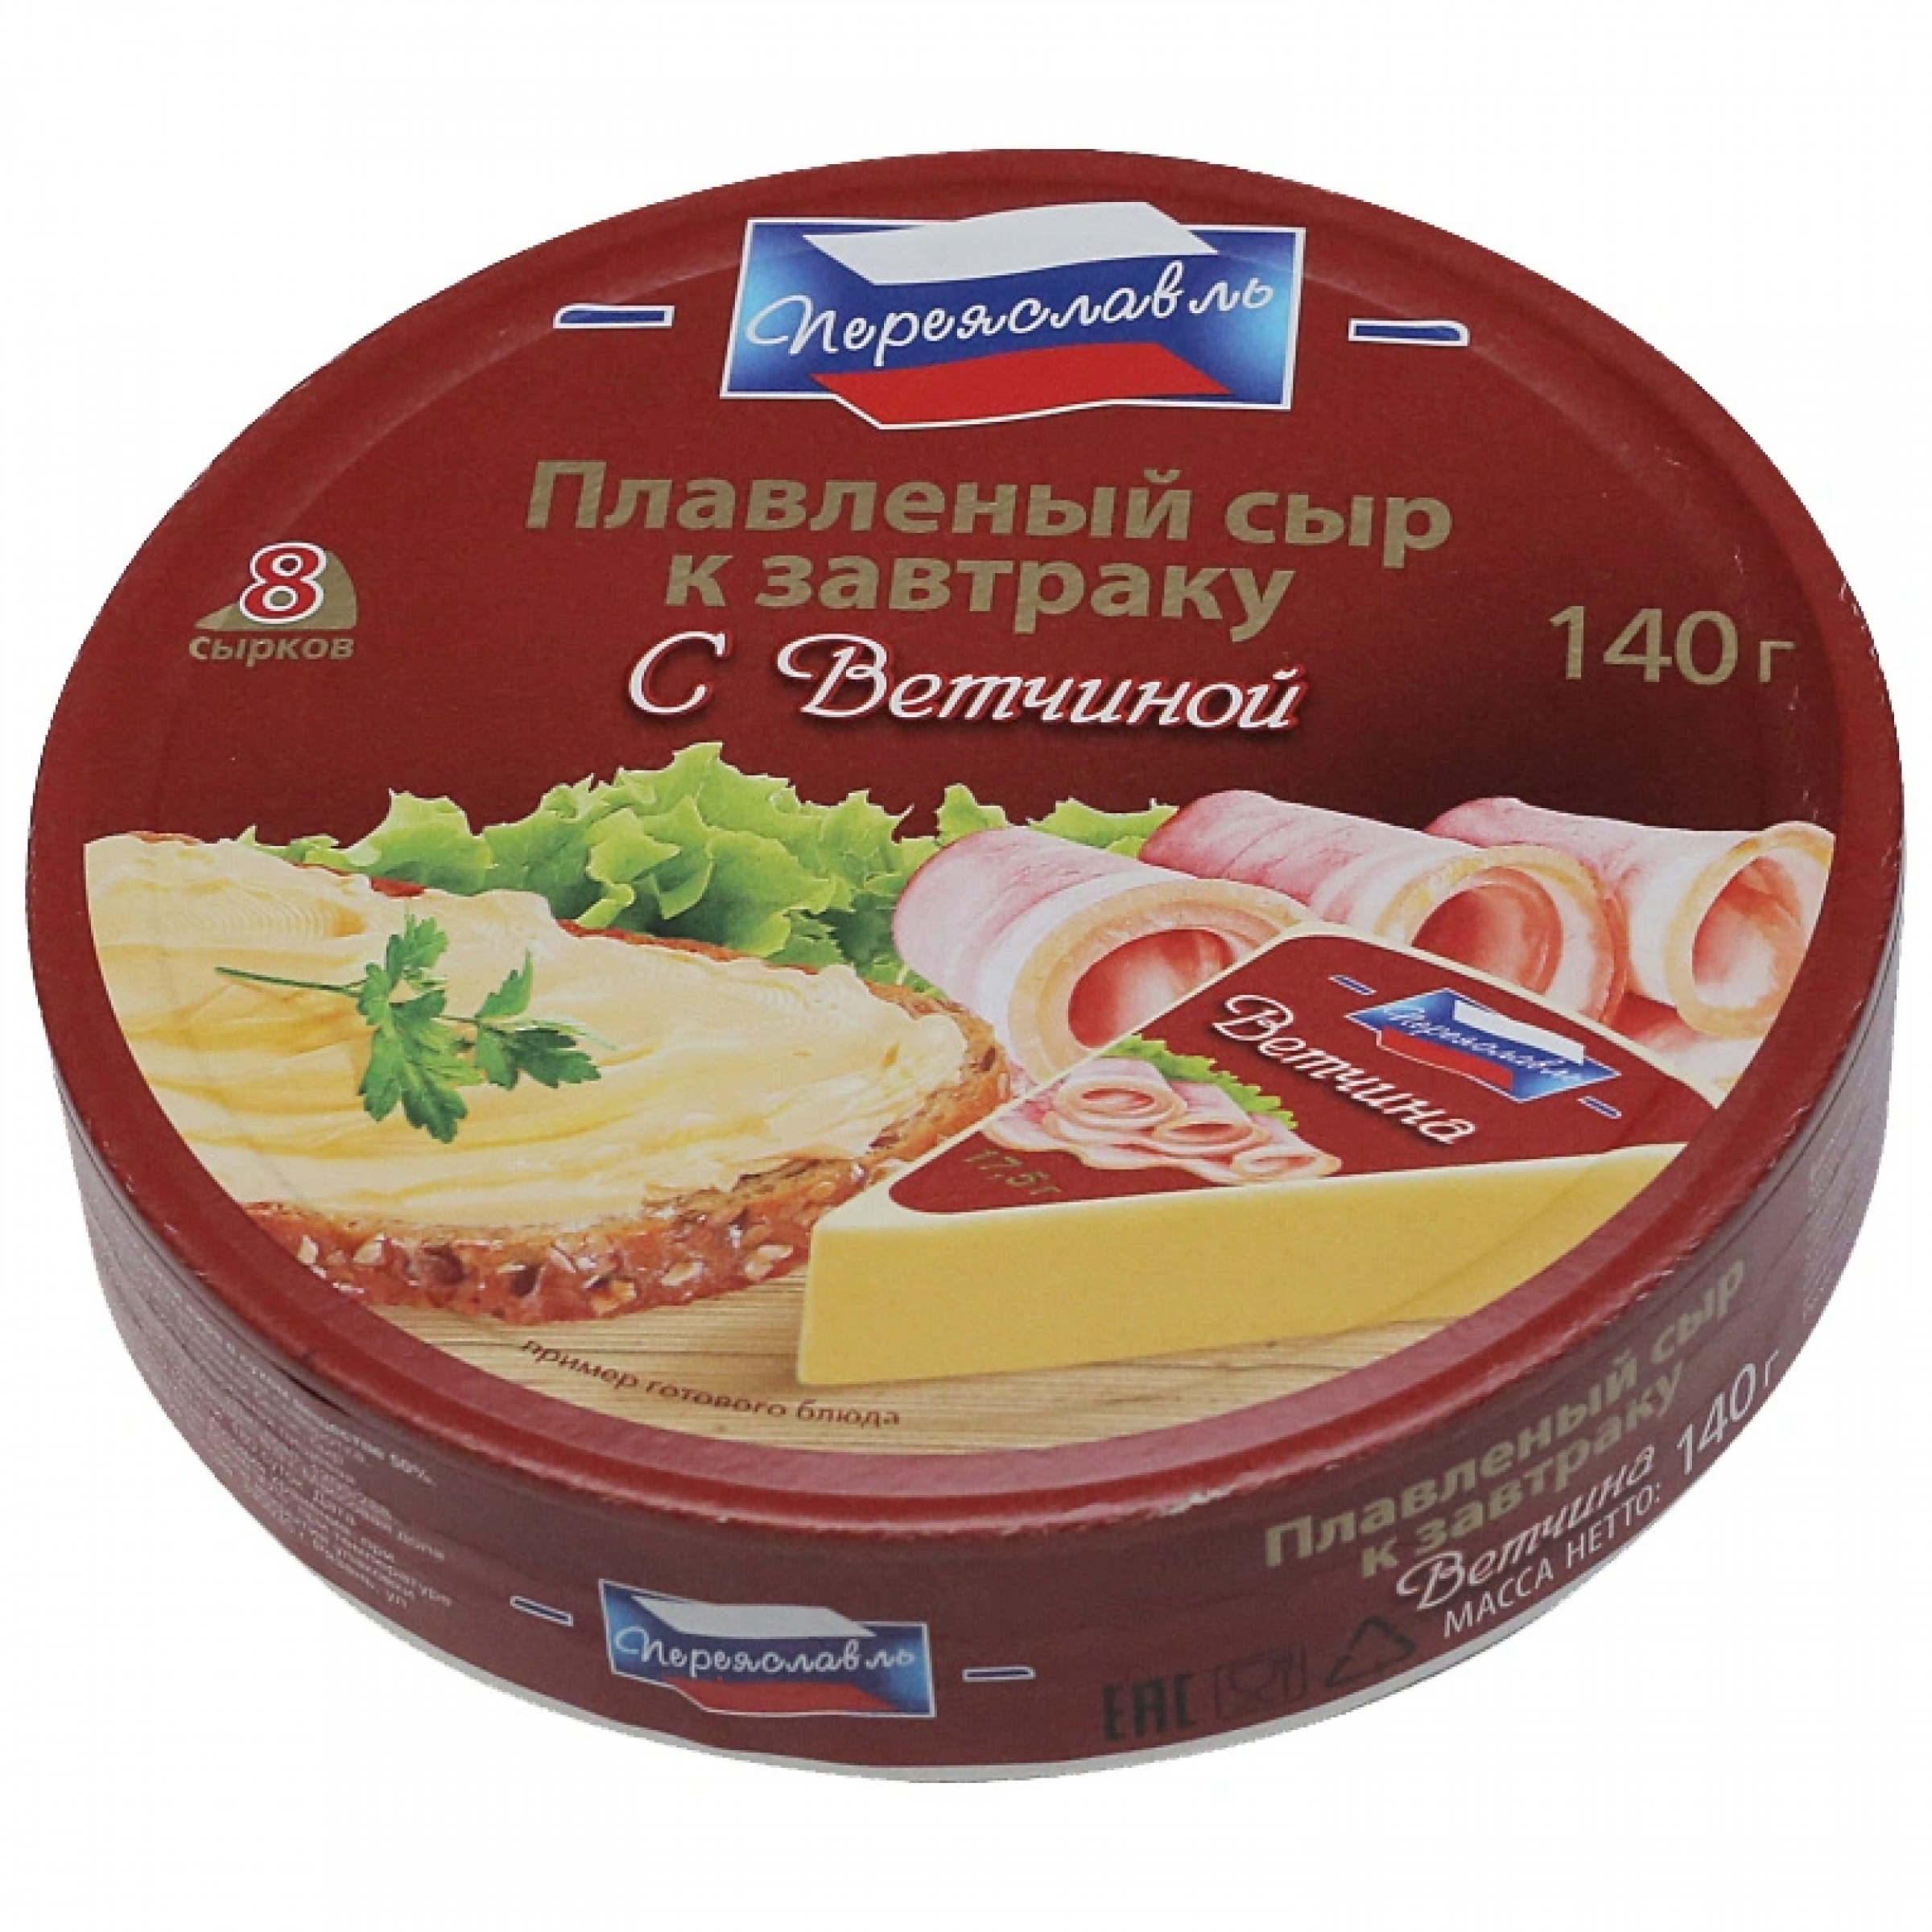 Плавленый сыр К завтраку Переяславль с ветчиной 25% 140 г